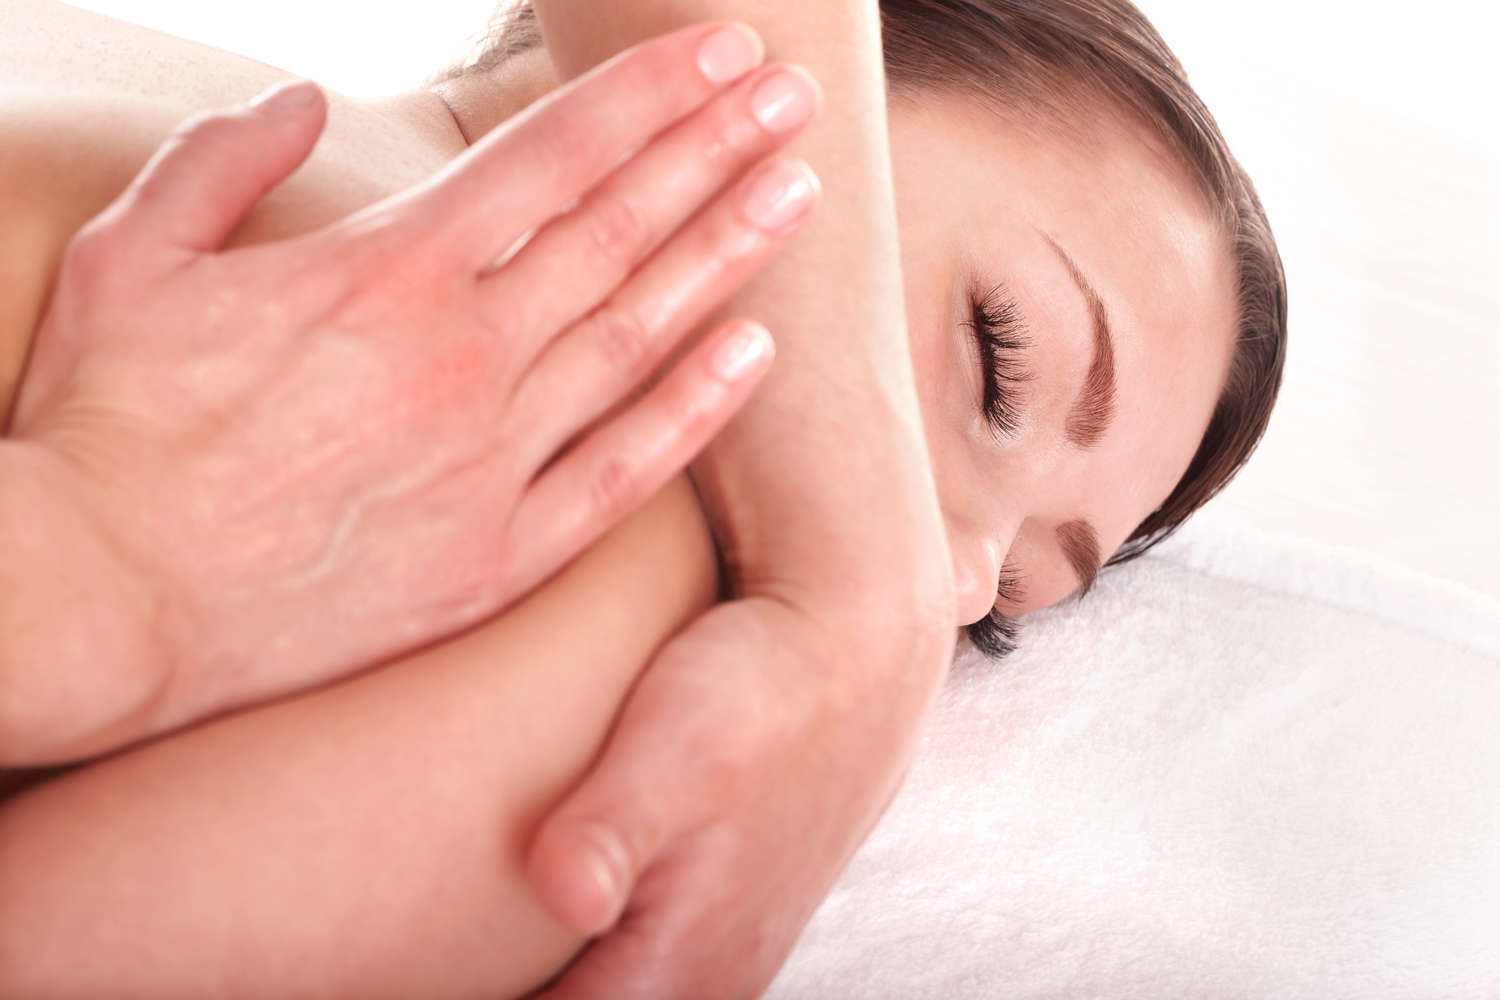   Massage  Berührung ist ein elementares Bedürfnis des Menschen 